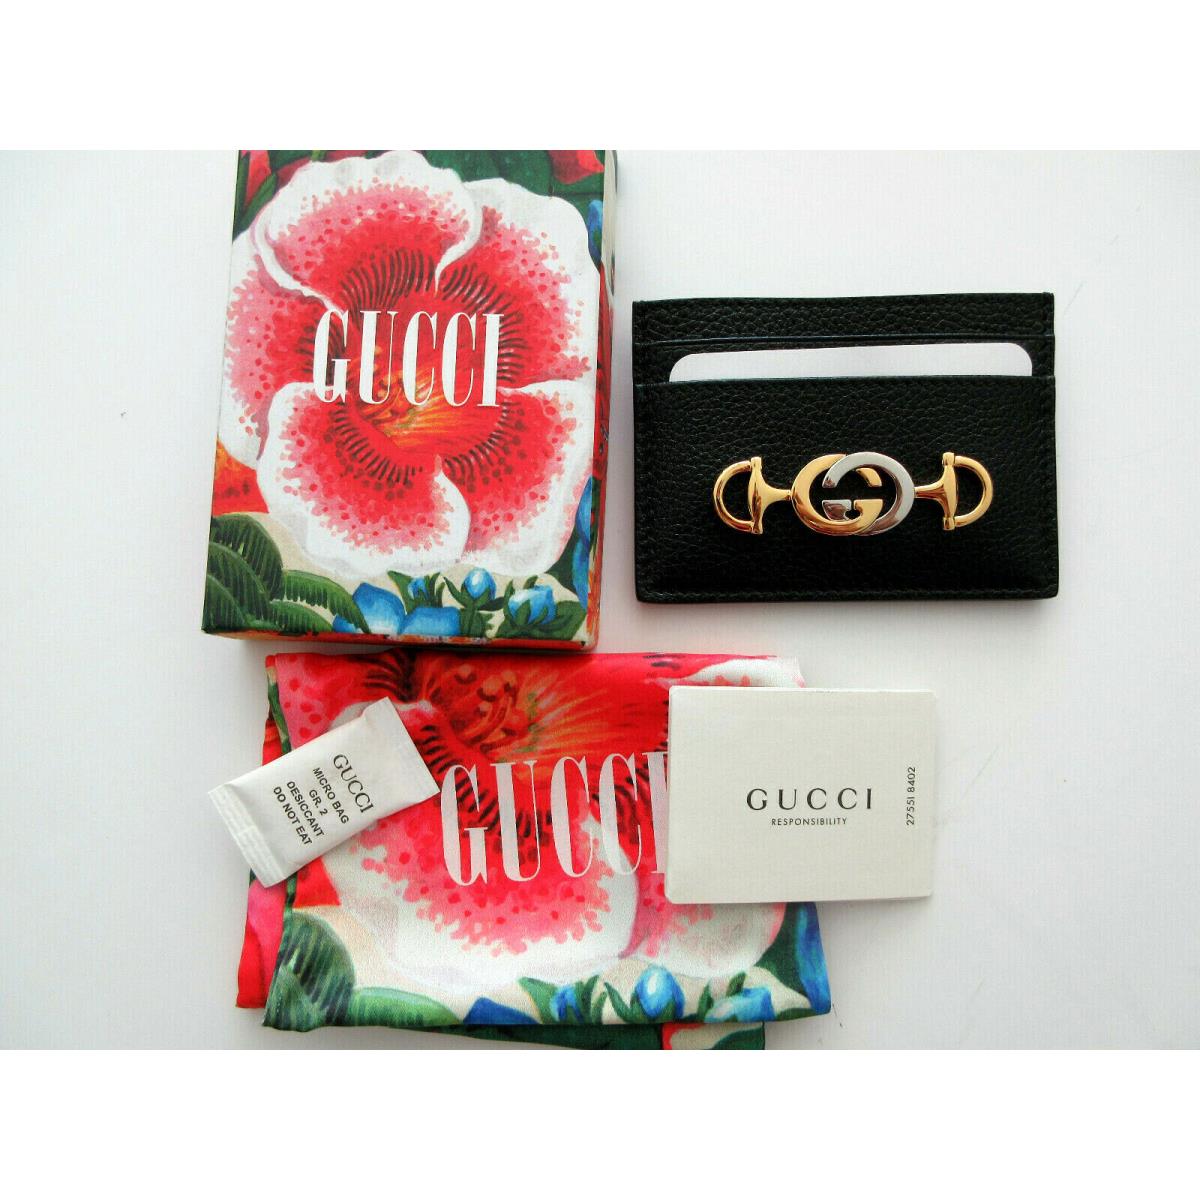 Gucci Black Zumi Card Case with Gucci Box 570679